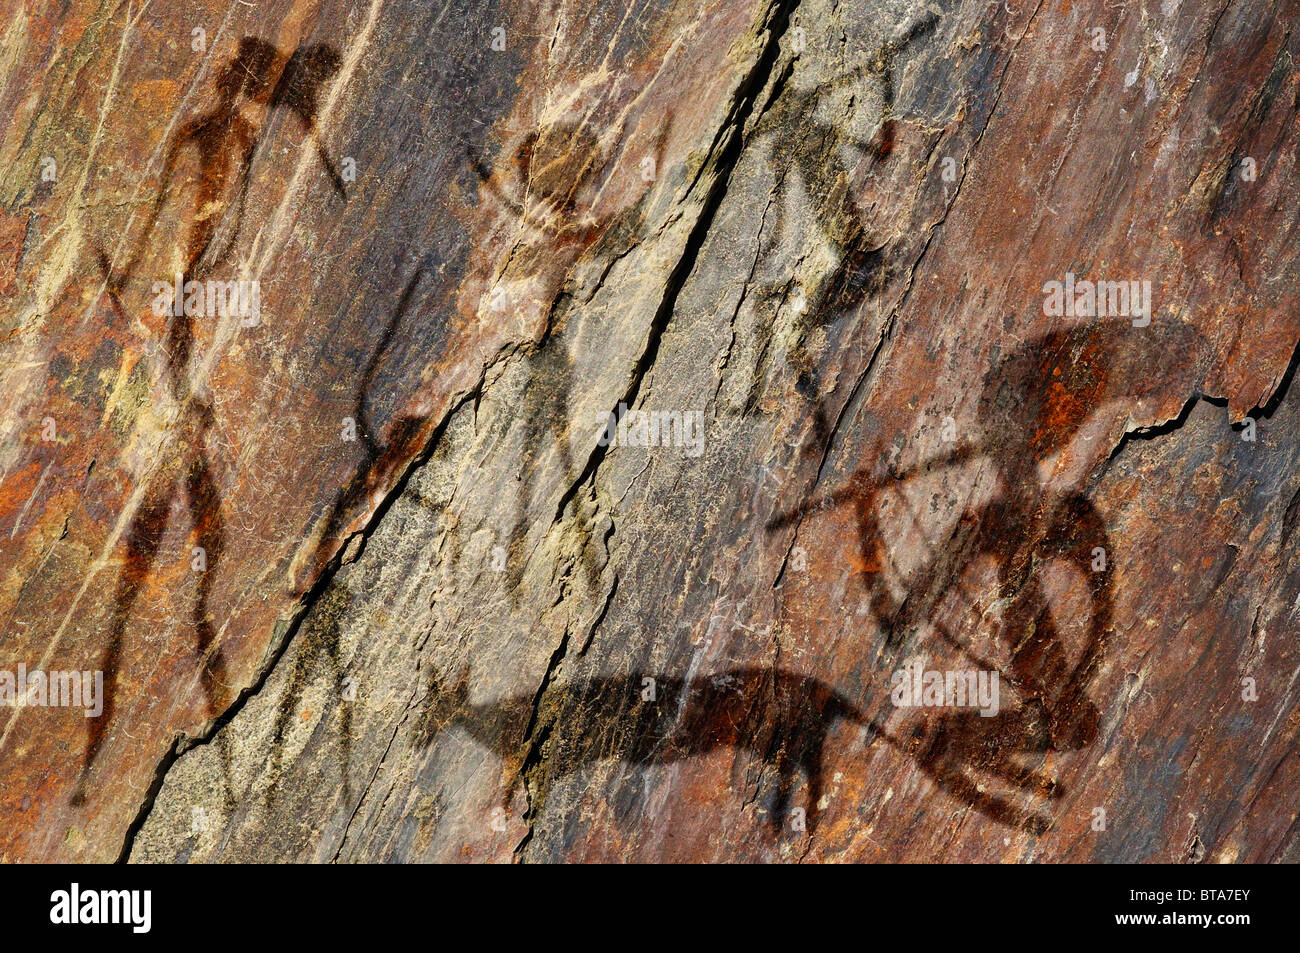 Las figuras en la roca primitiva parece pintura rupestre Foto de stock